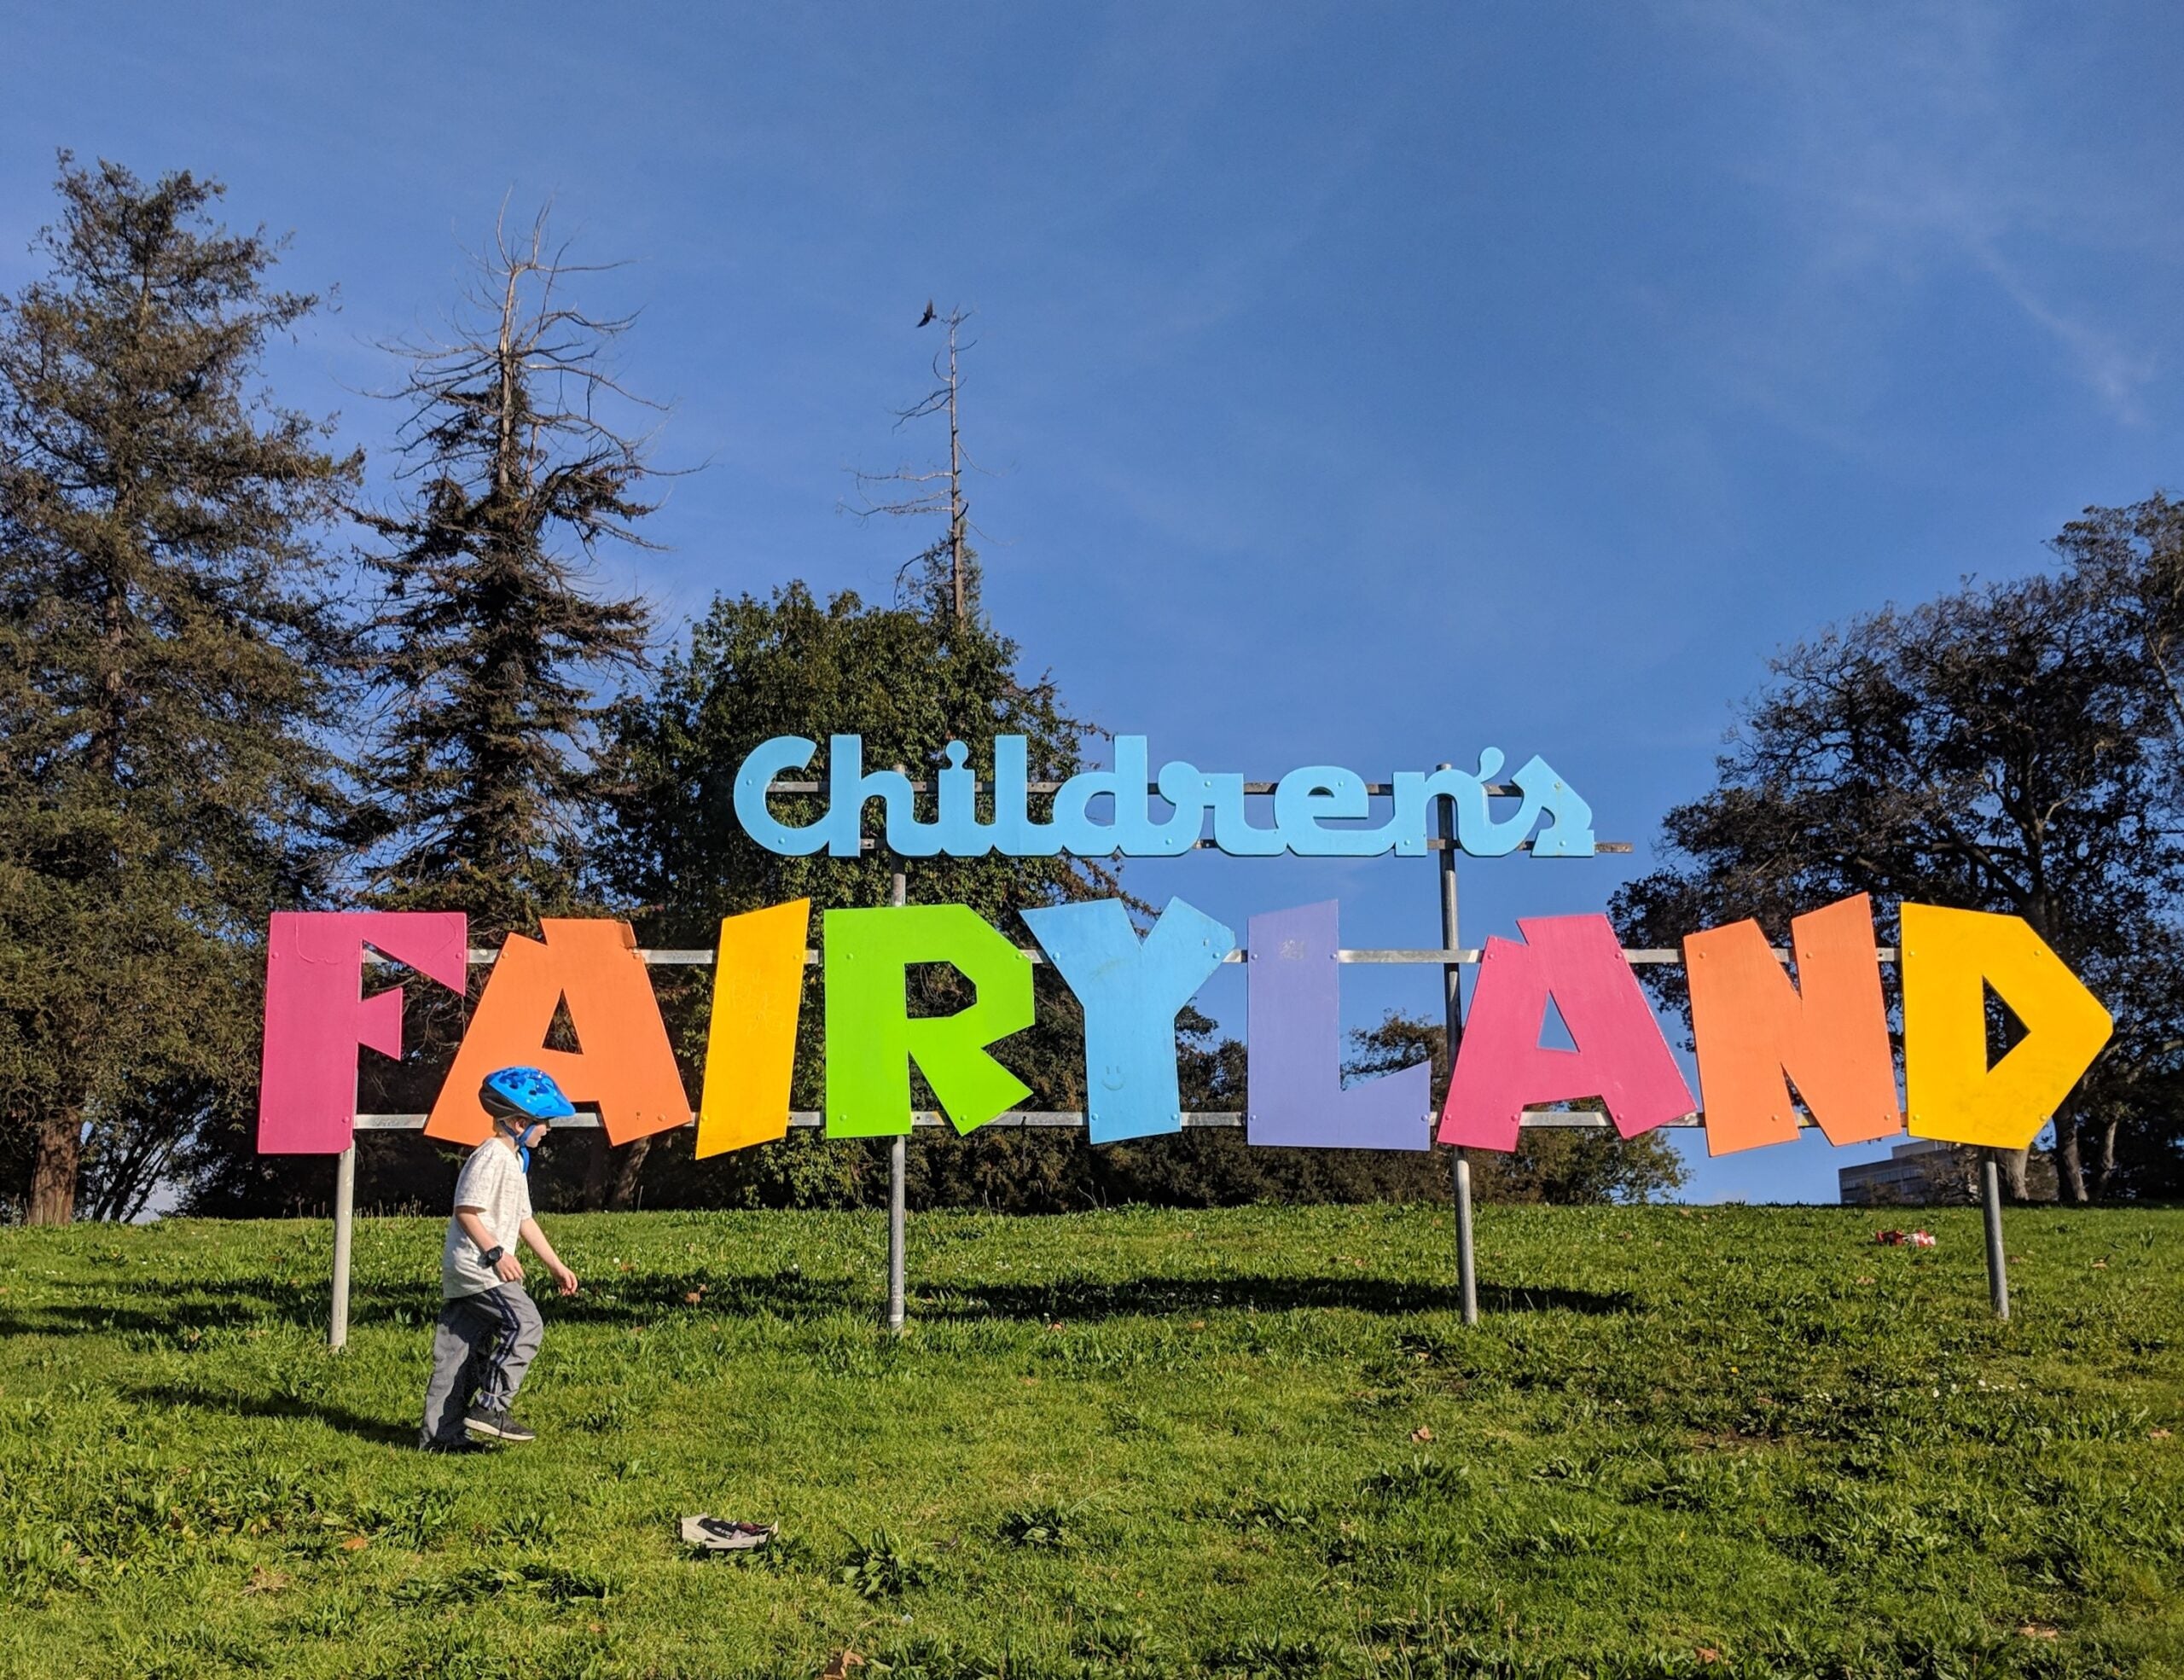 Walt Disney's Disneyland inspiration A look at Children's Fairyland in